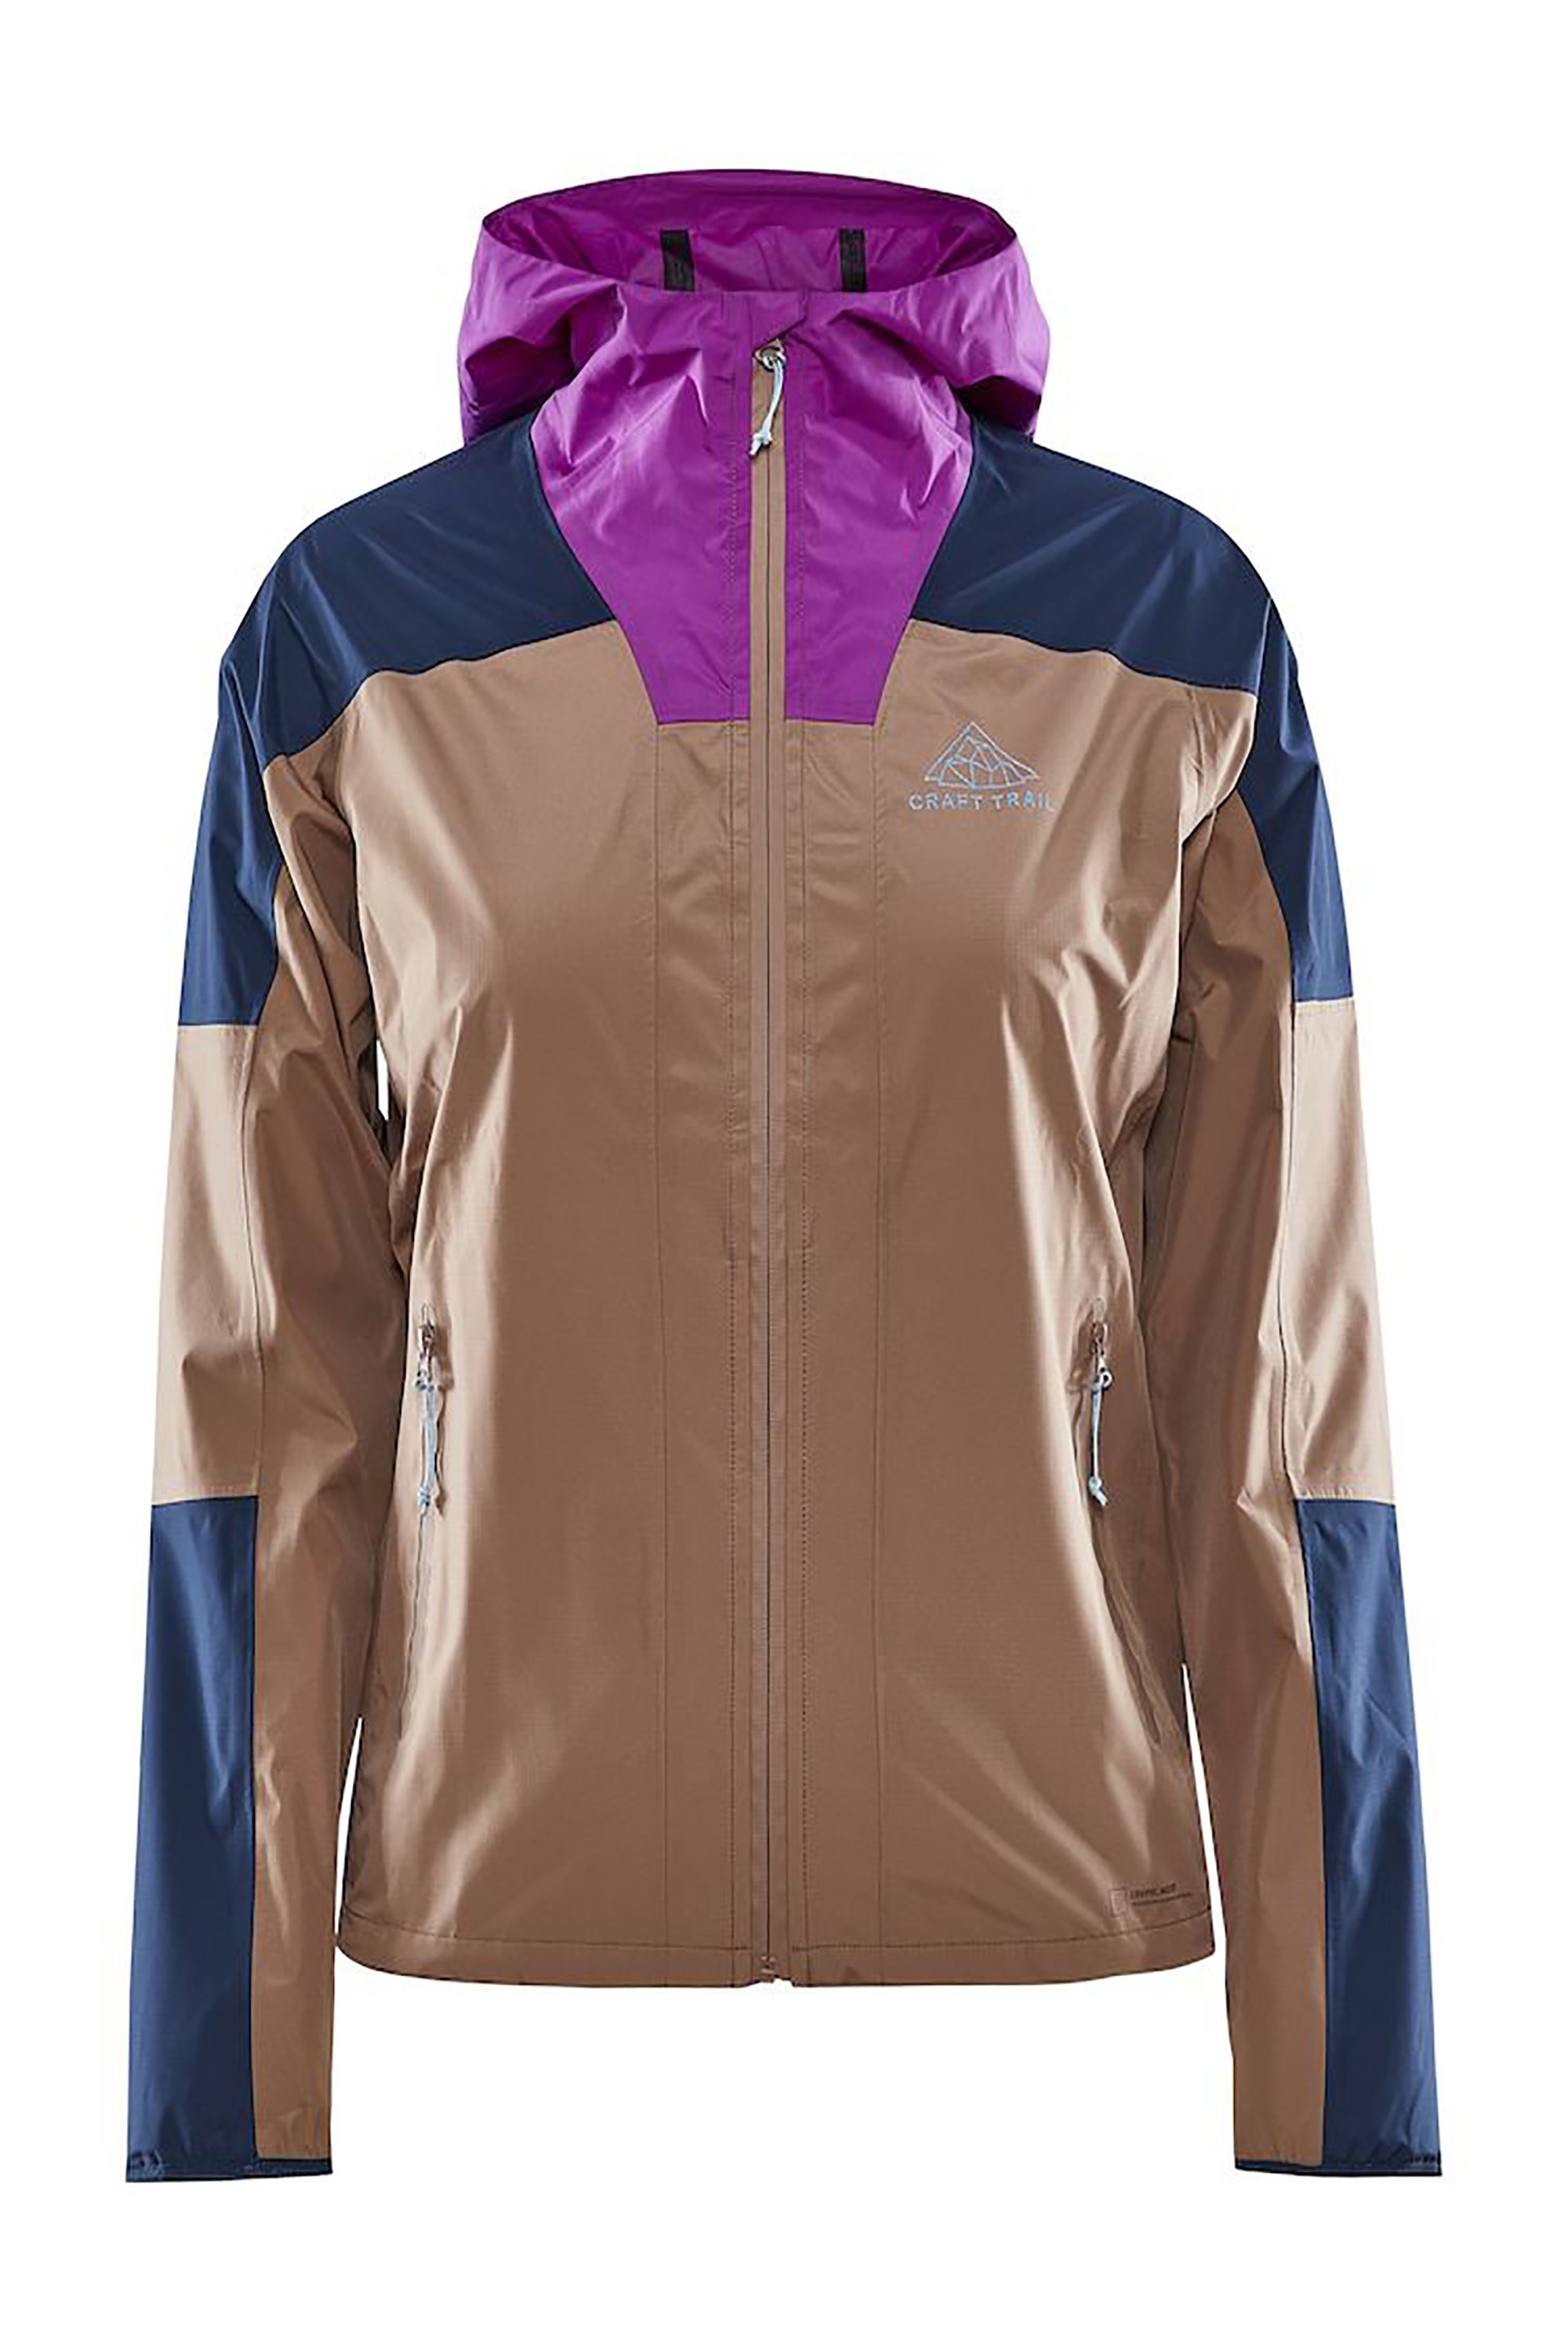 Pro Trail Womens Hydro Jacket -